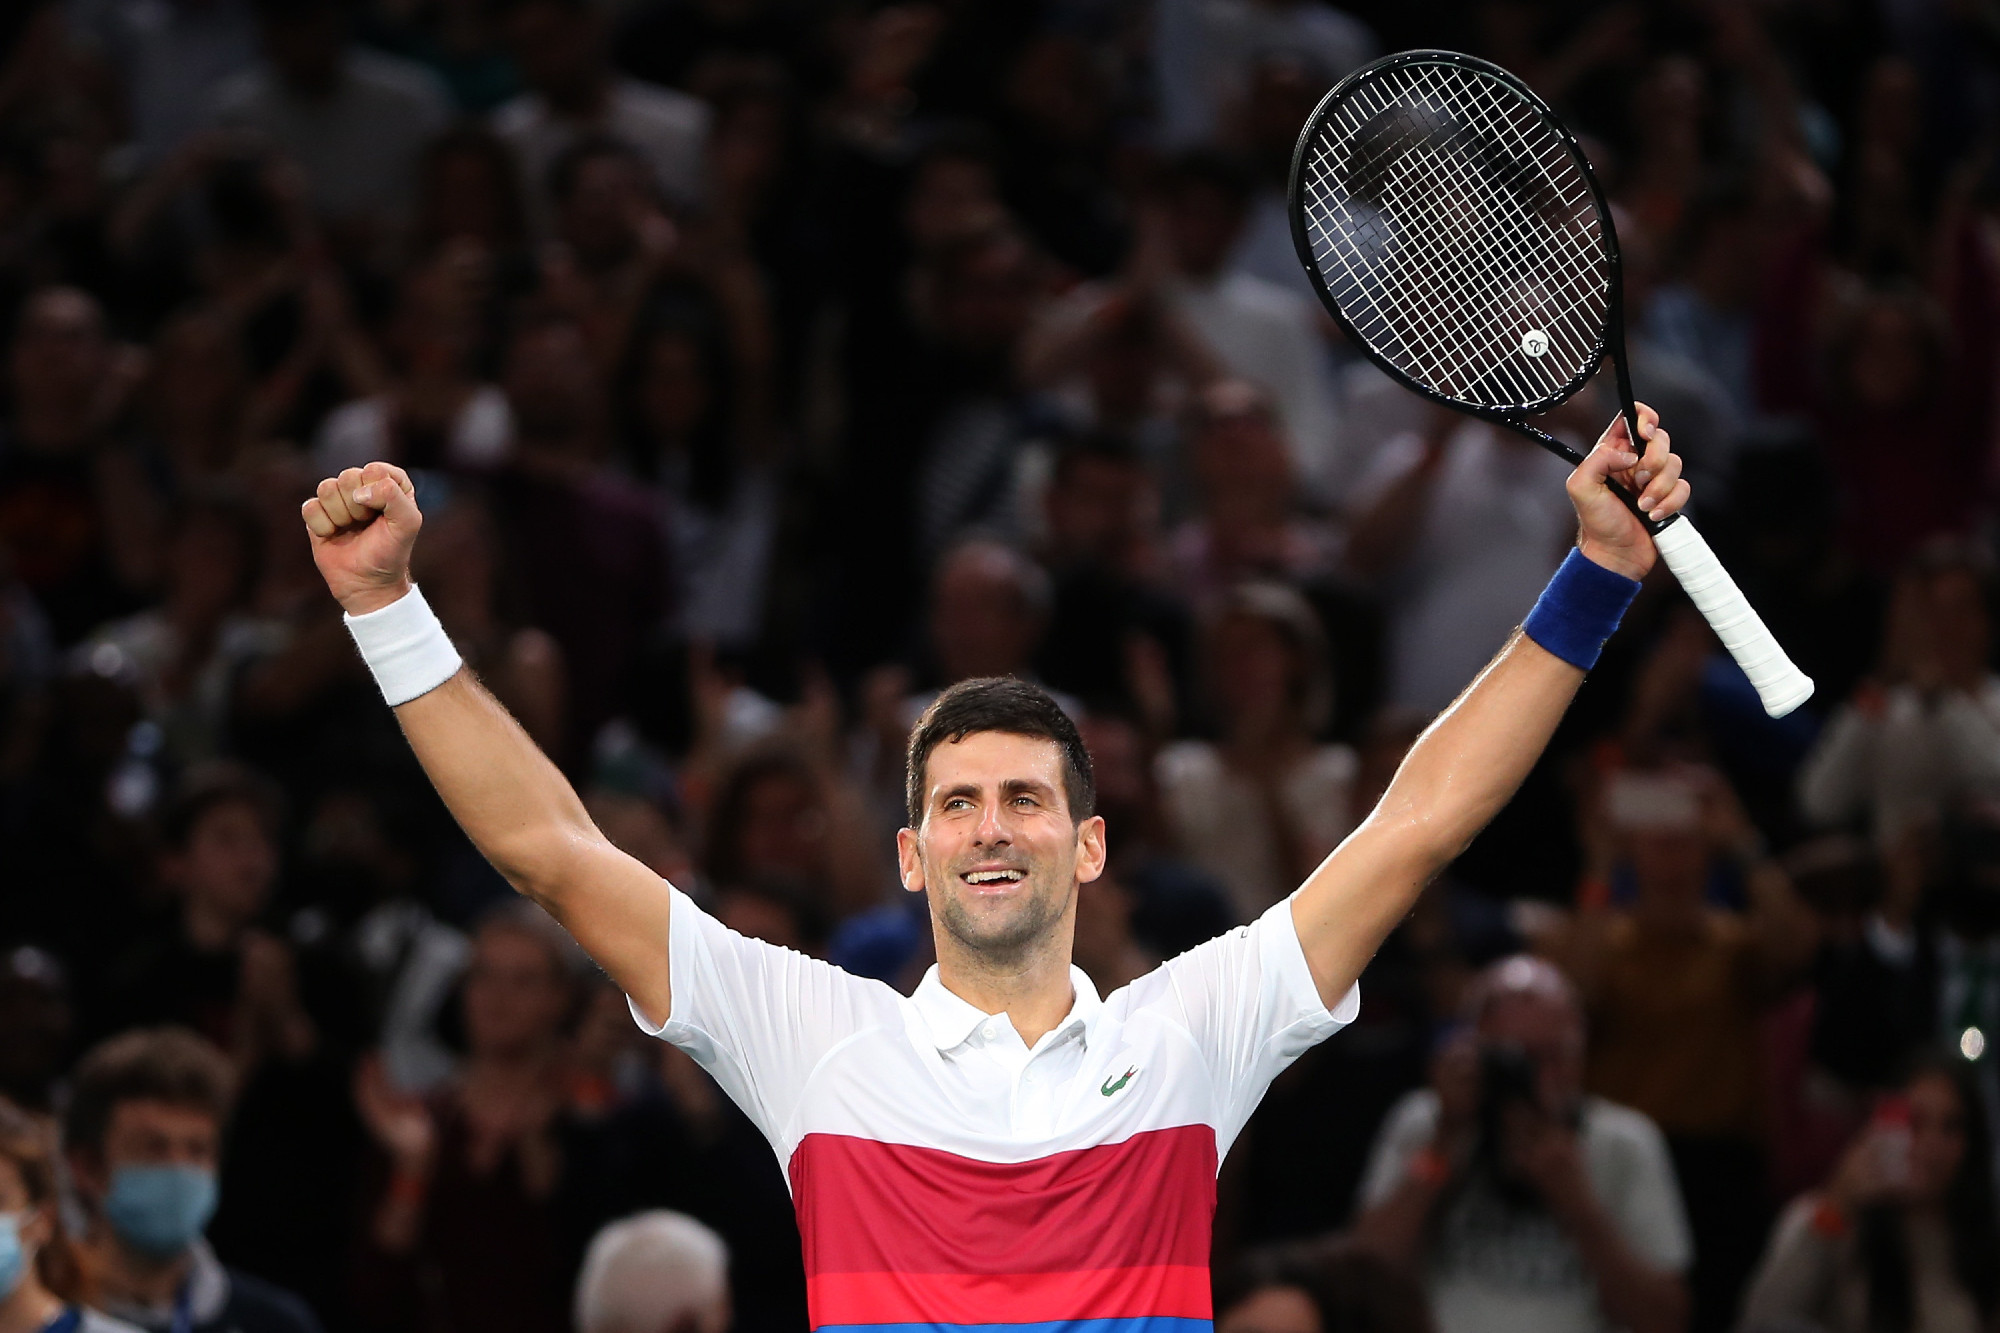 Eldőlt: Novak Djokovic nem maradhat Ausztráliában